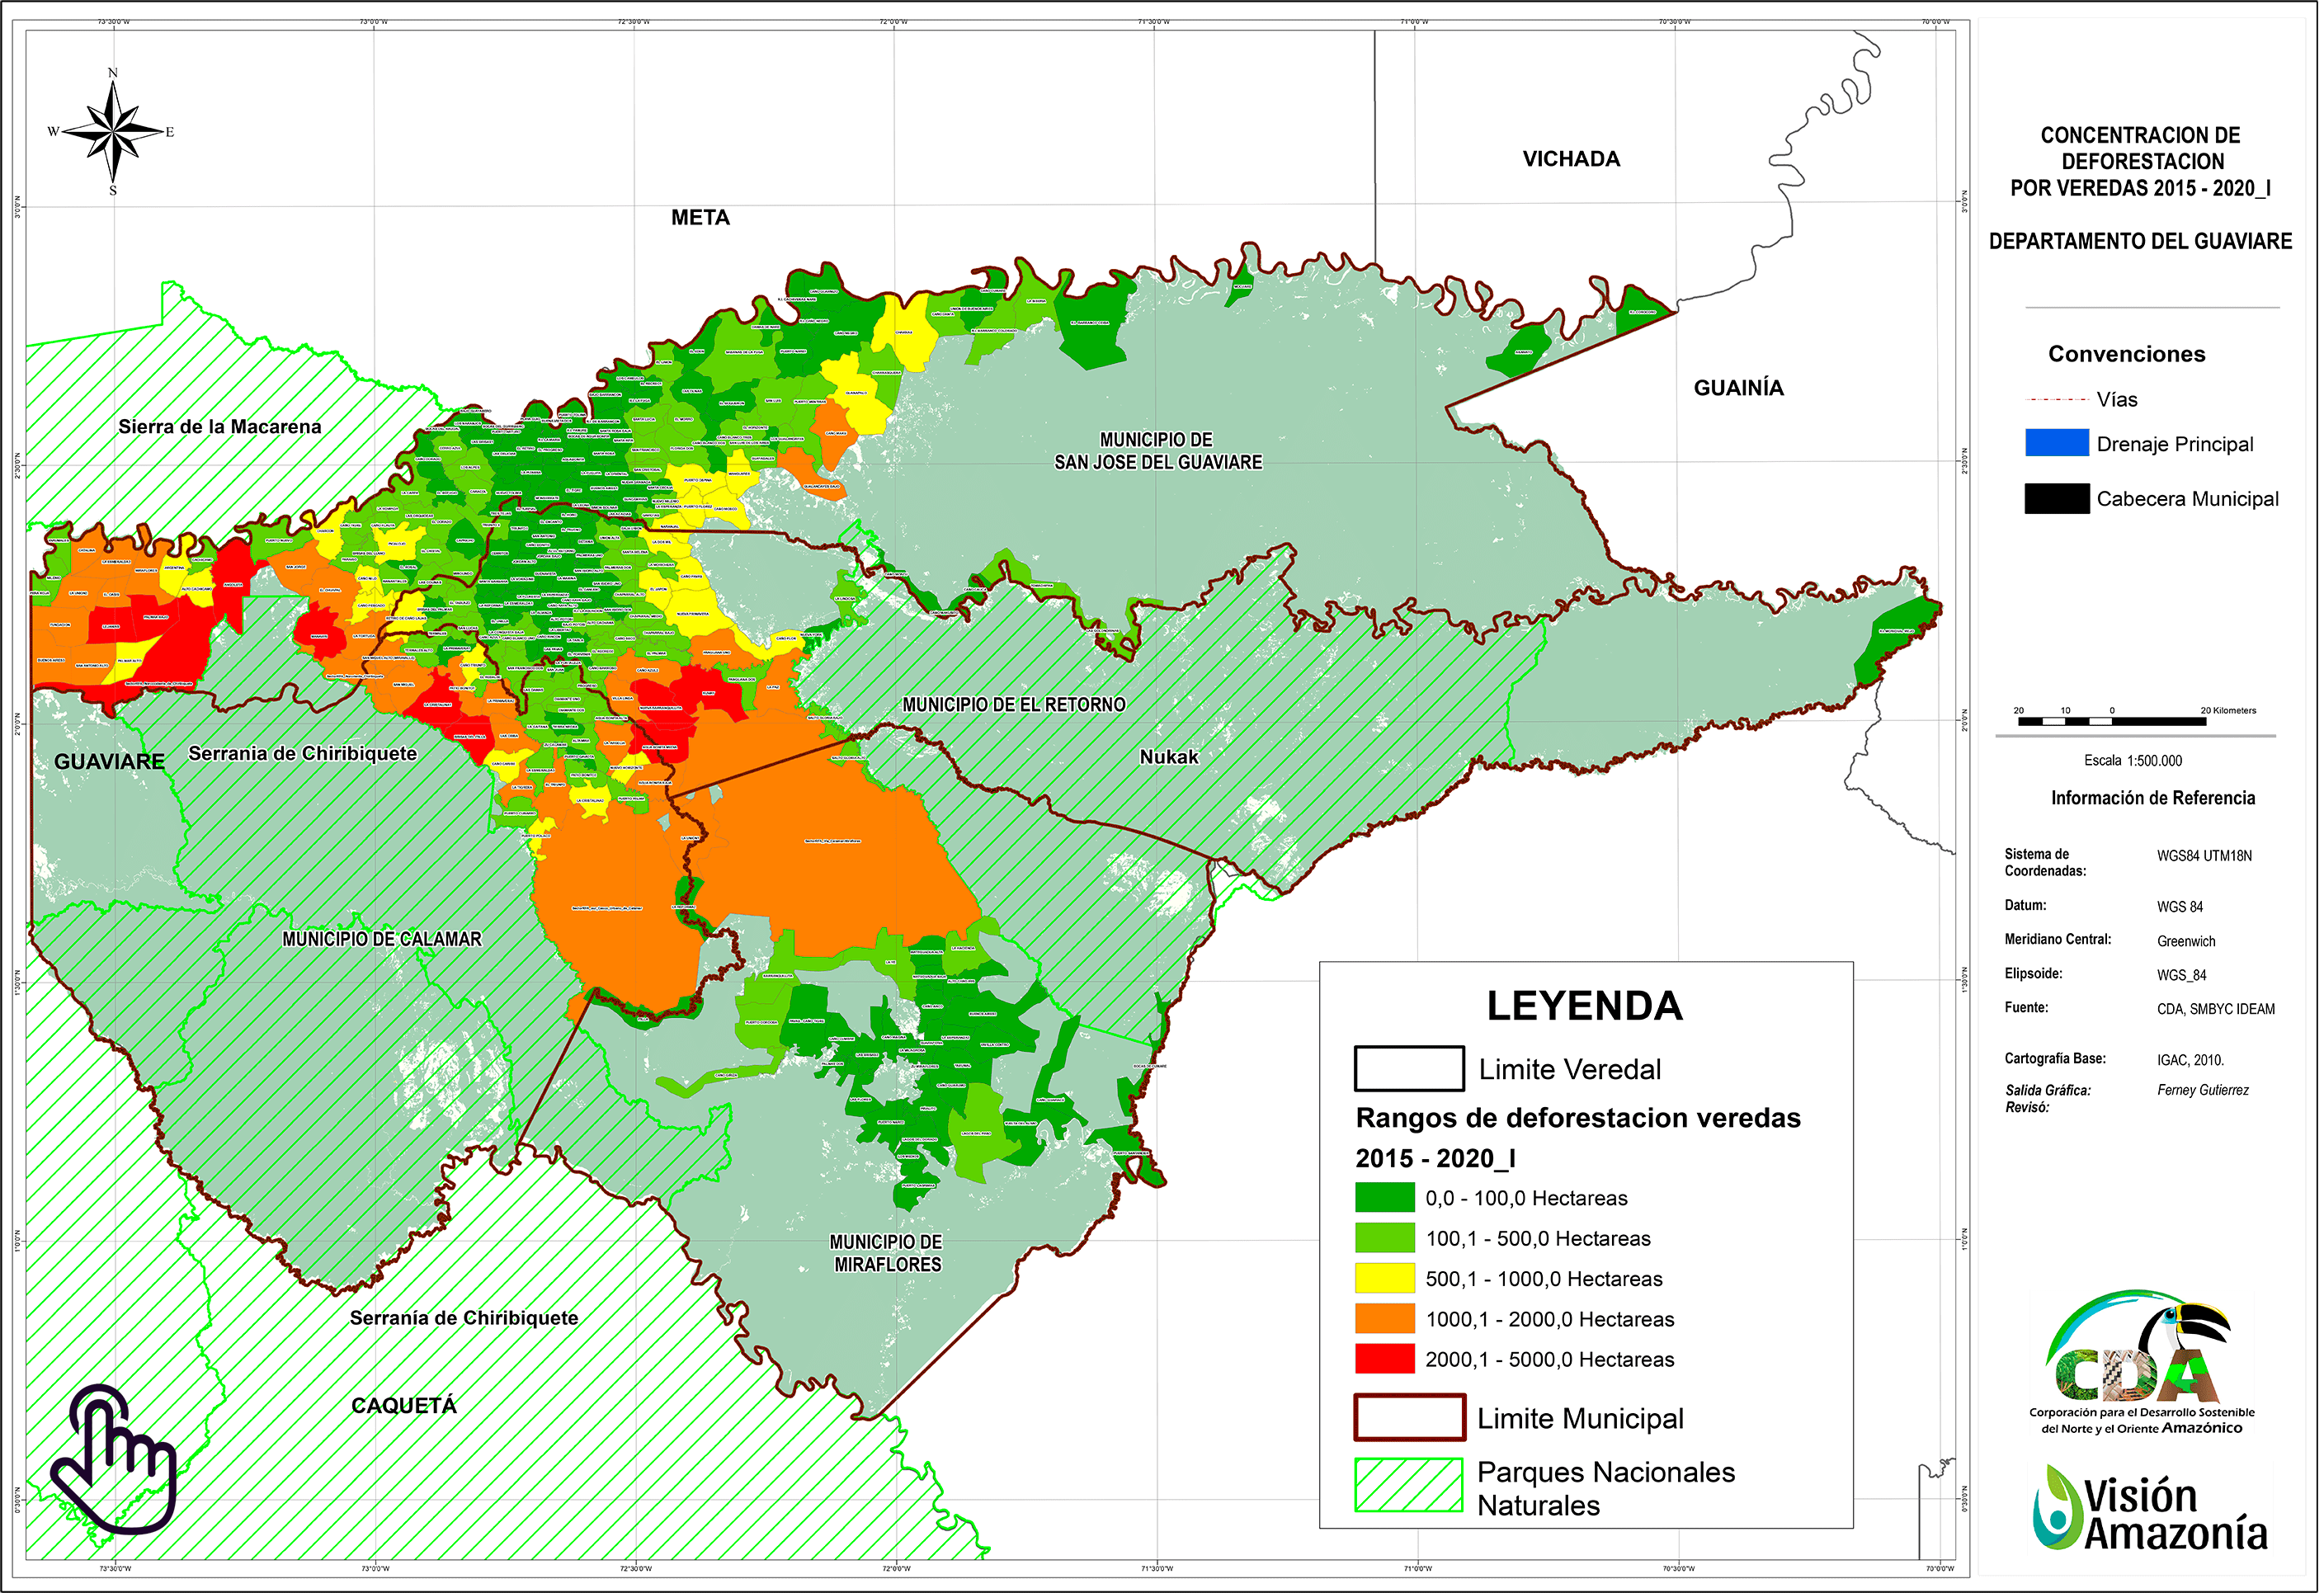  DeforestacionPorVeredas2015-2020